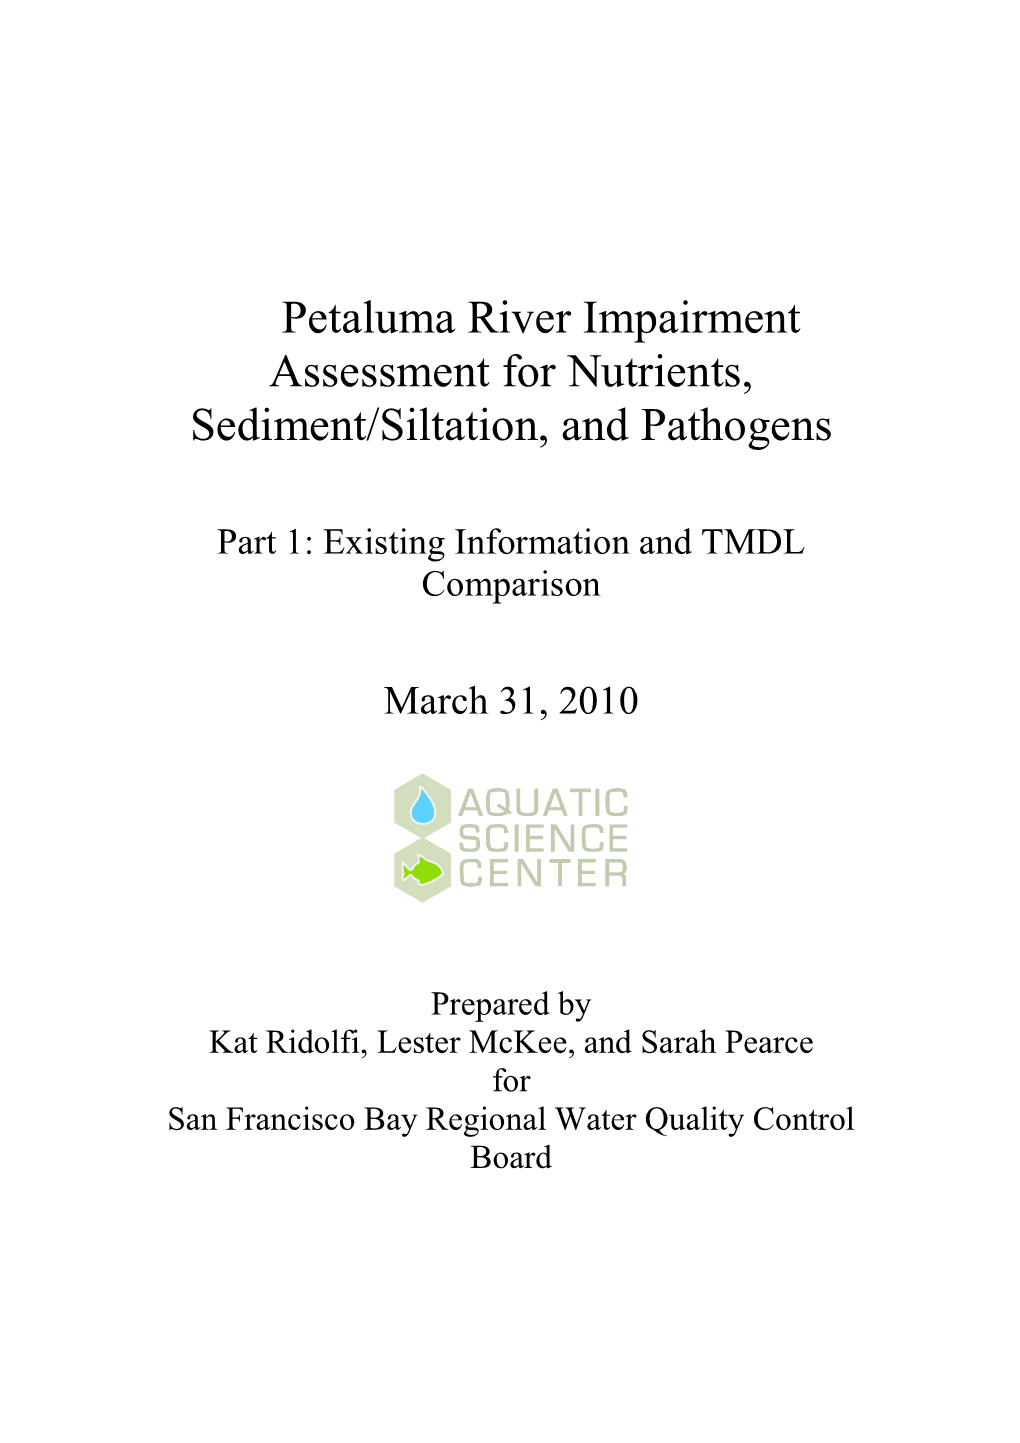 Petaluma River Impairment Assessment for Nutrients, Sediment/Siltation, and Pathogens